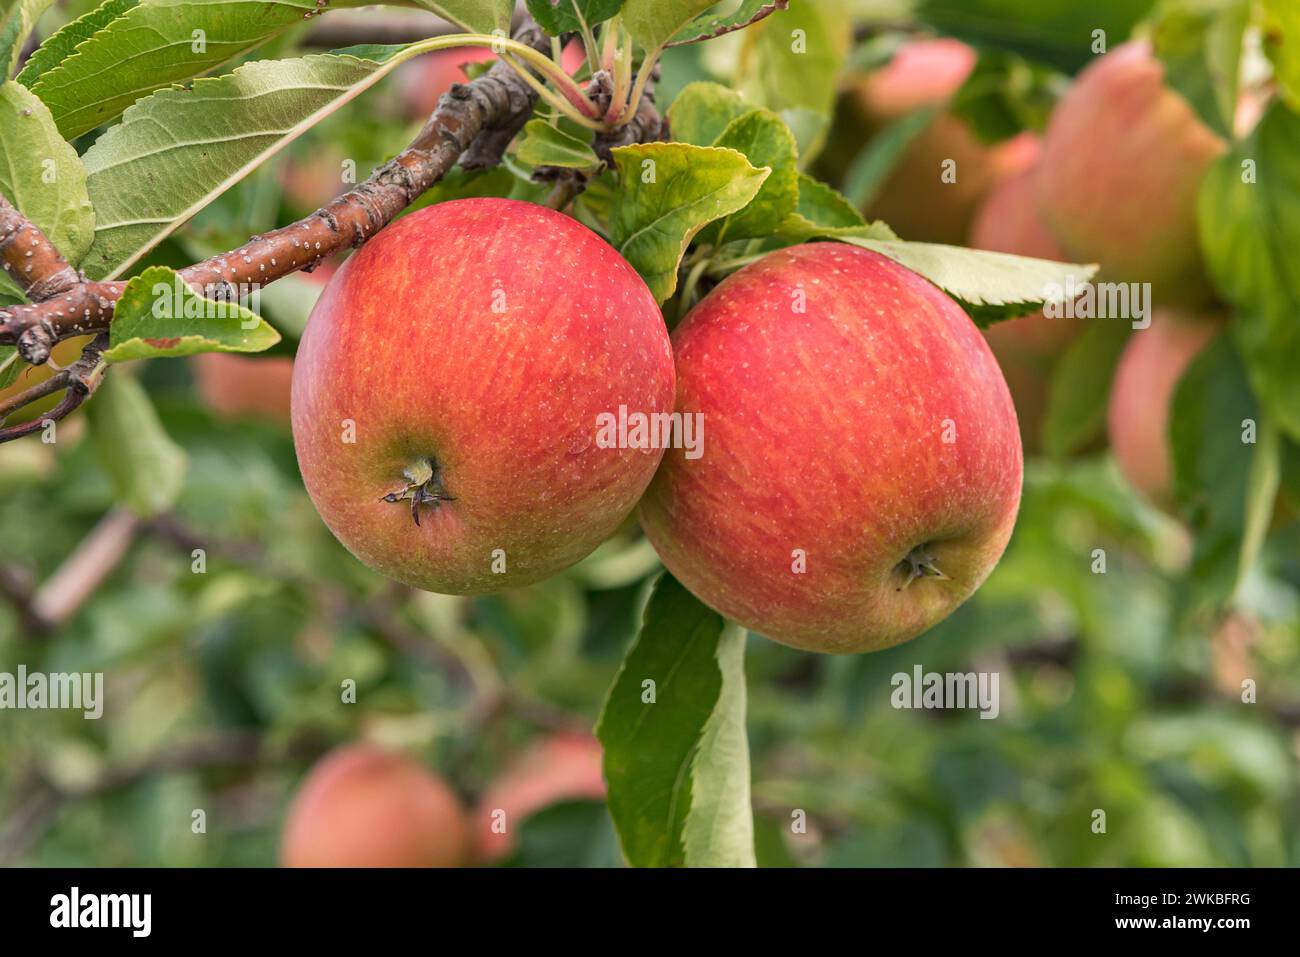 apple (Malus domestica 'Rubinette Rosso', Malus domestica Rubinette Rosso), cultivar Rubinette Rosso Stock Photo